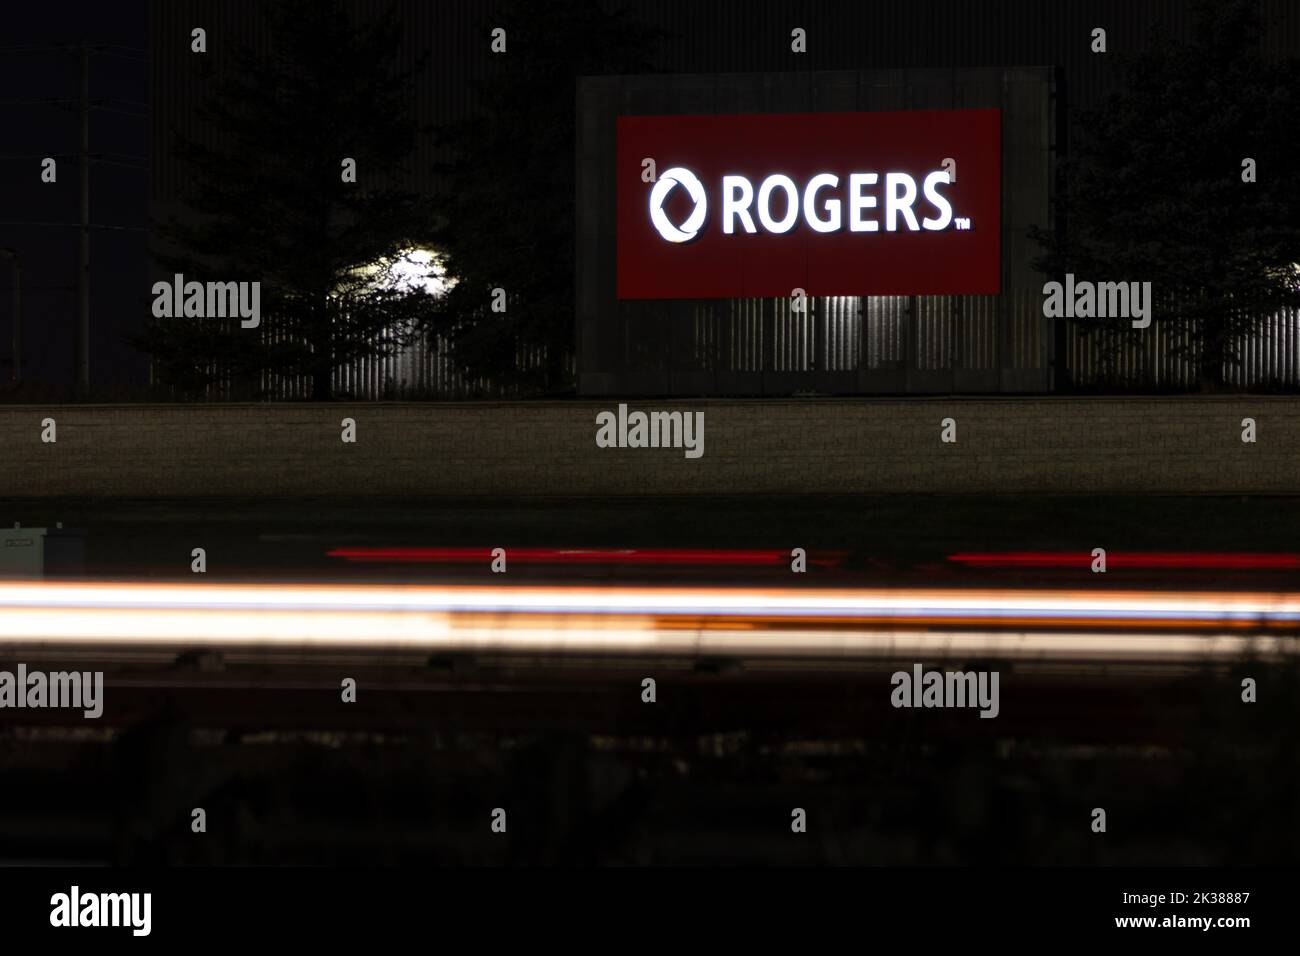 Le logo Rogers est illuminé sur un panneau, vu la nuit le long d'une autoroute très fréquentée; Rogers est le plus grand fournisseur de services sans fil au Canada et une entreprise de médias. Banque D'Images